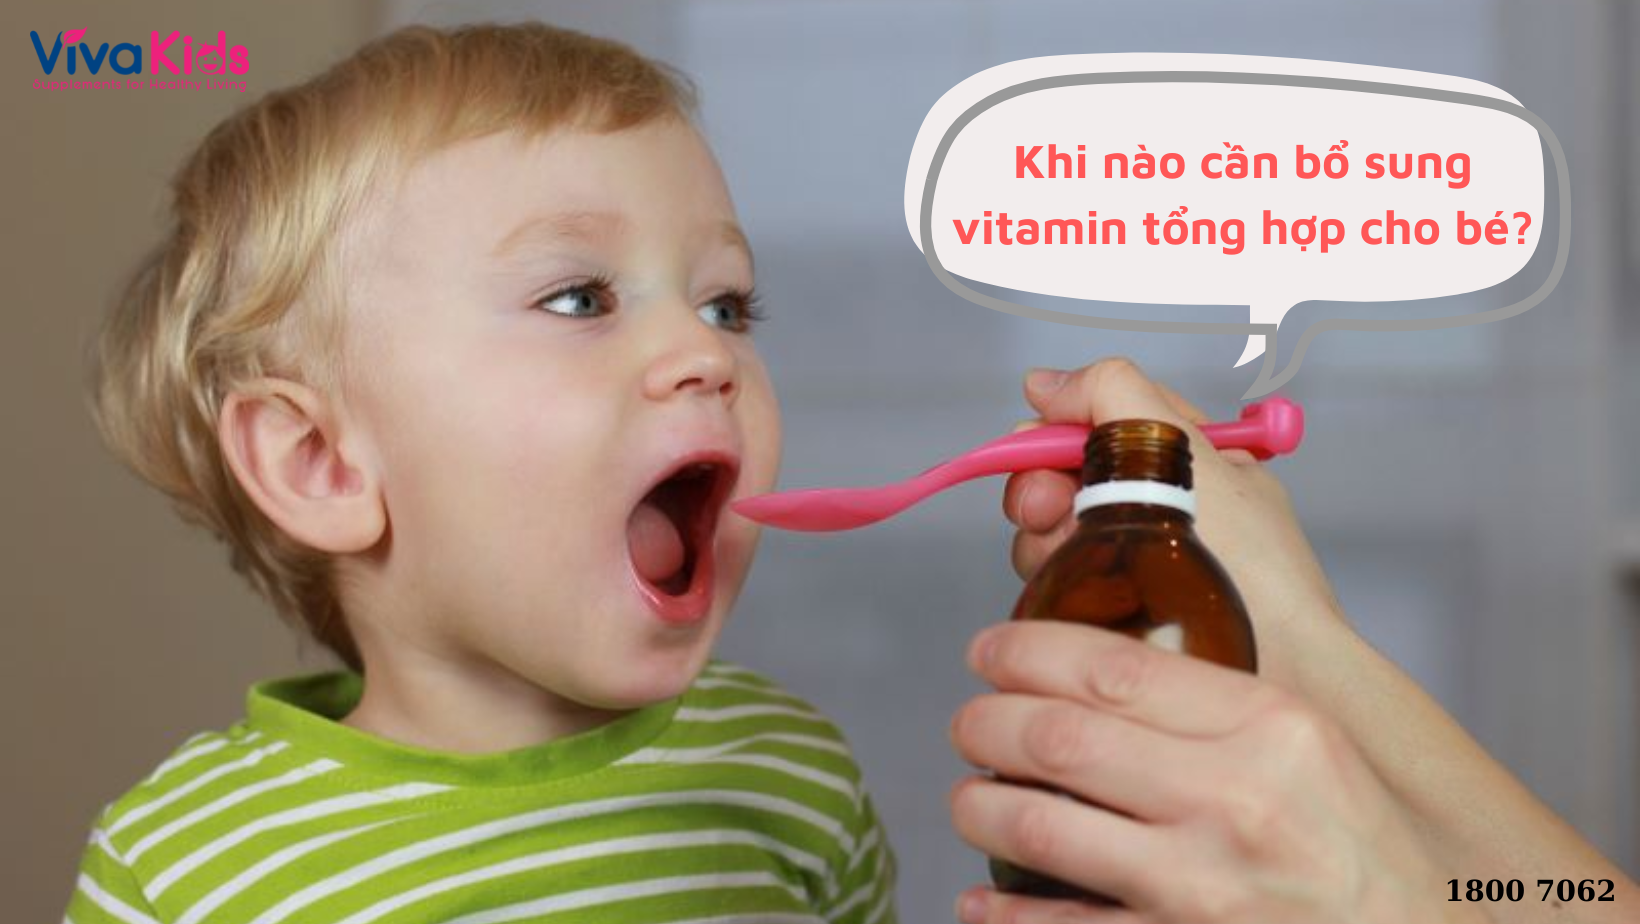 Khi nào cần bổ sung vitamin tổng hợp cho bé